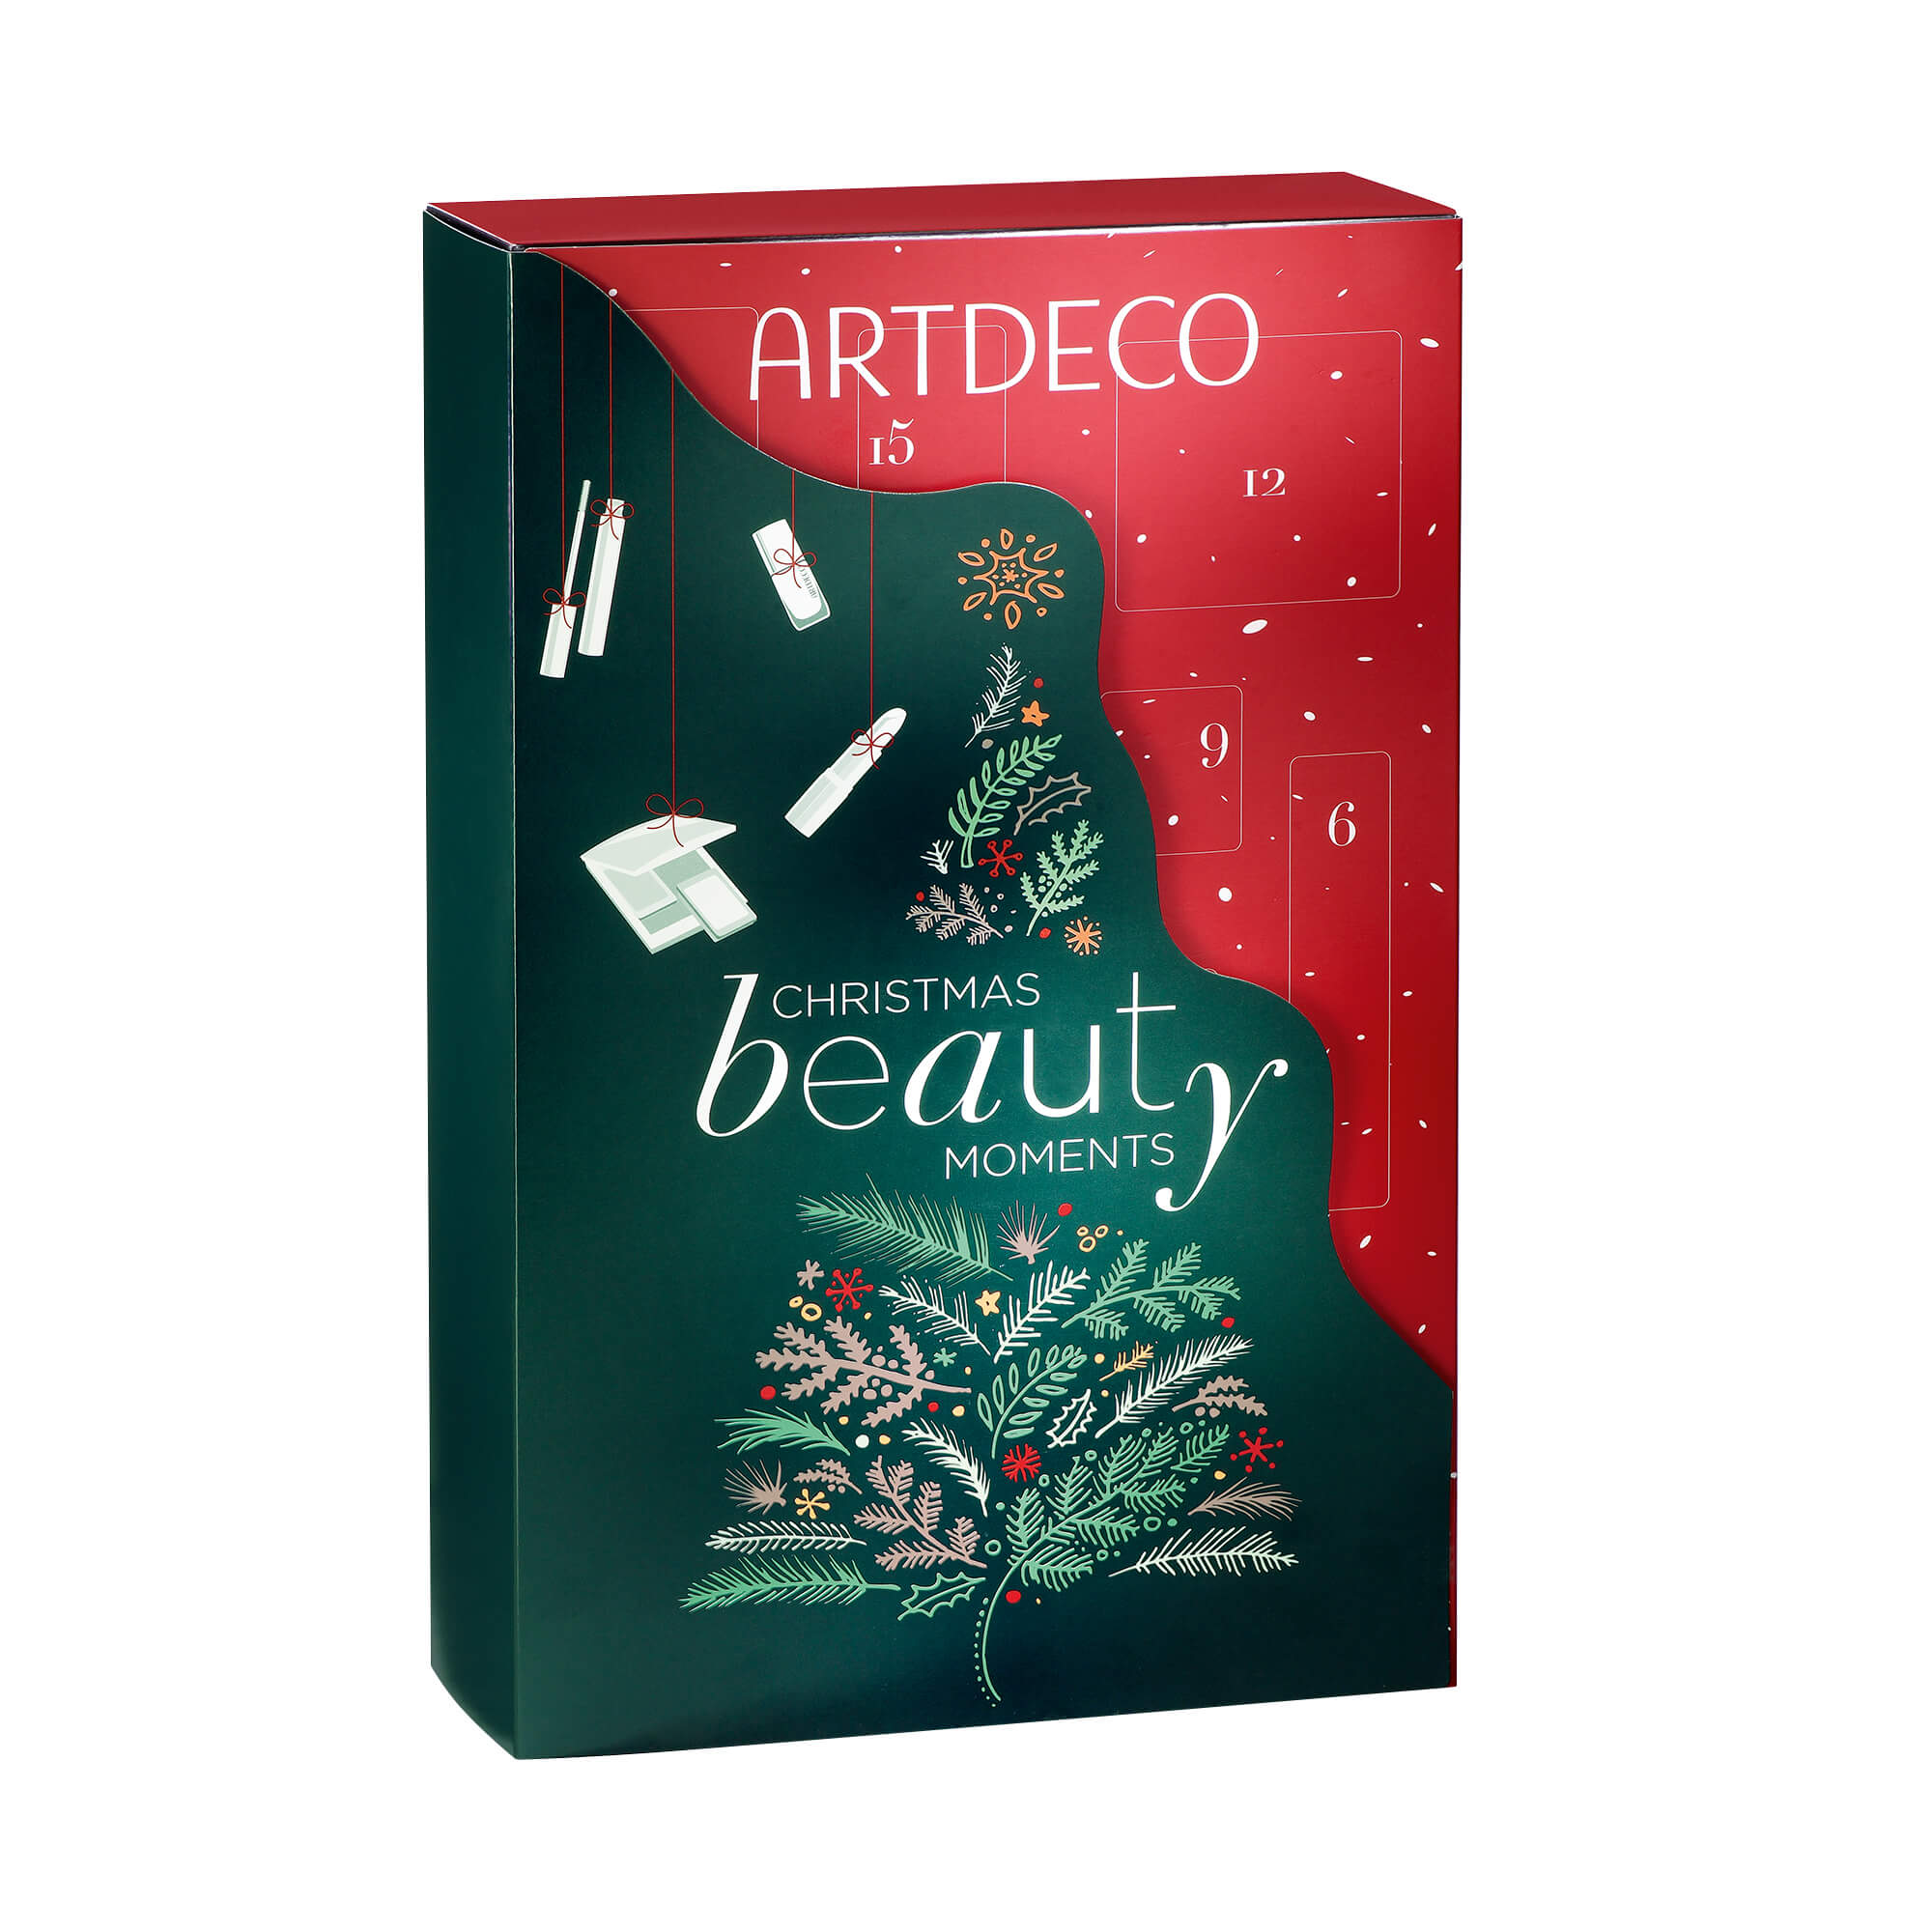 Gewinnspiel – 2 x 1 Limitierter Beauty Adventskalender von Artdeco zu gewinnen